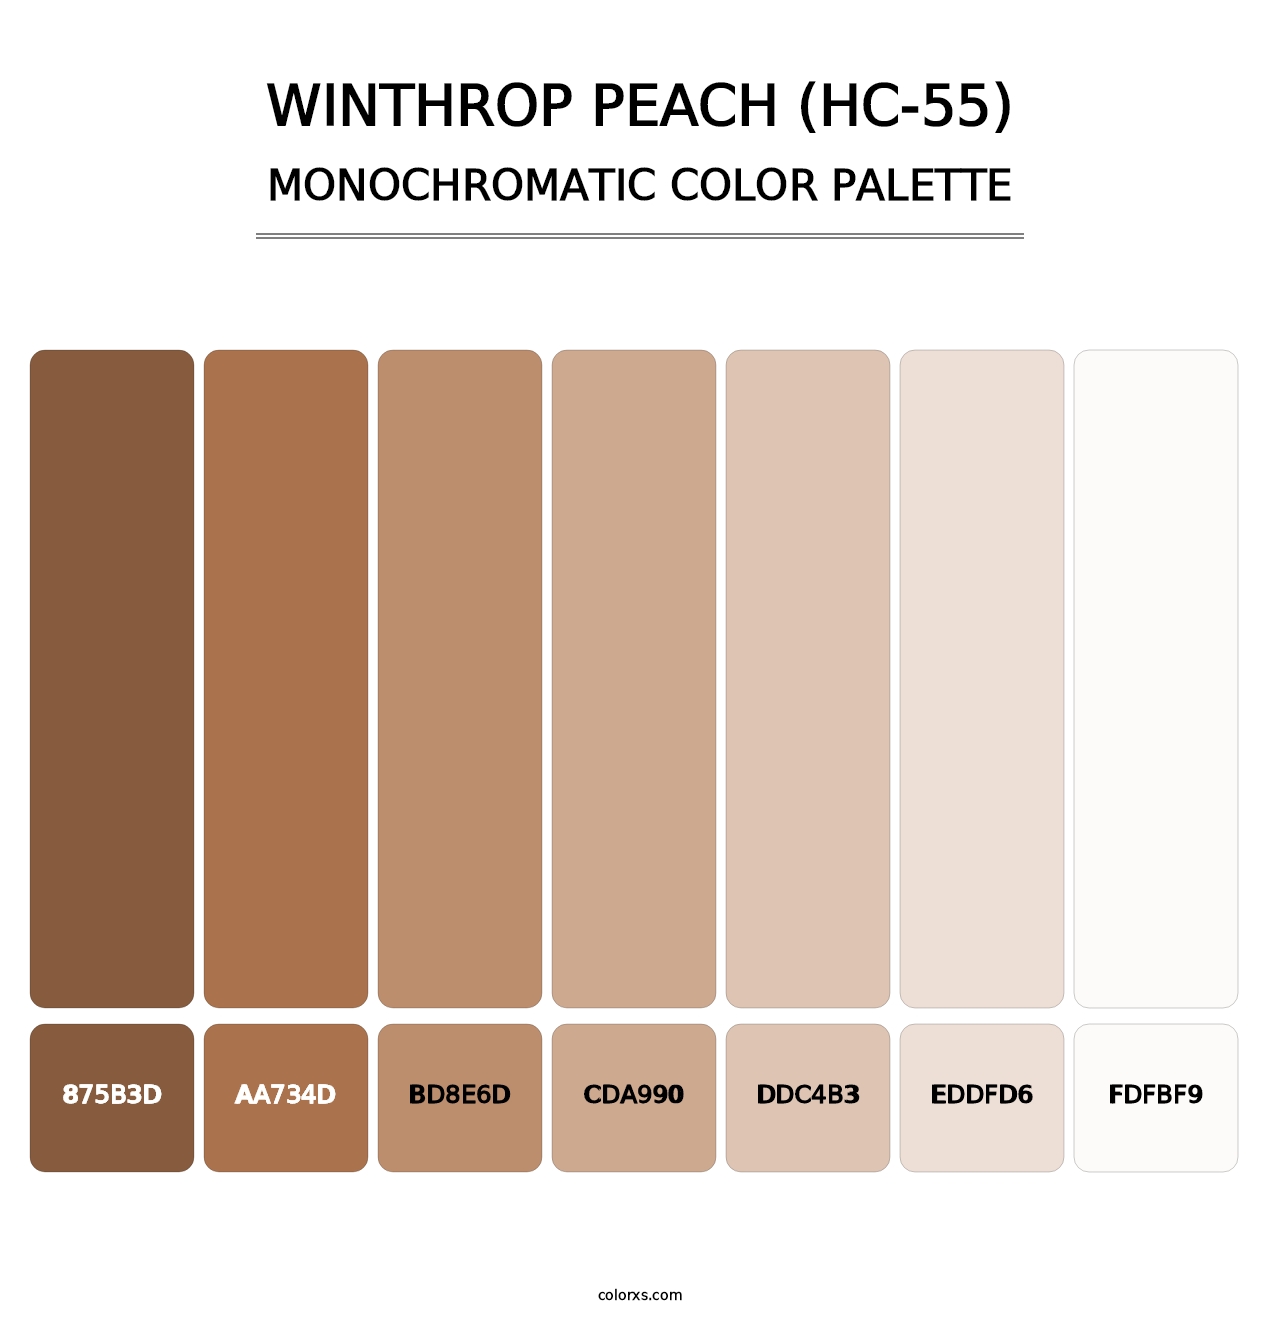 Winthrop Peach (HC-55) - Monochromatic Color Palette